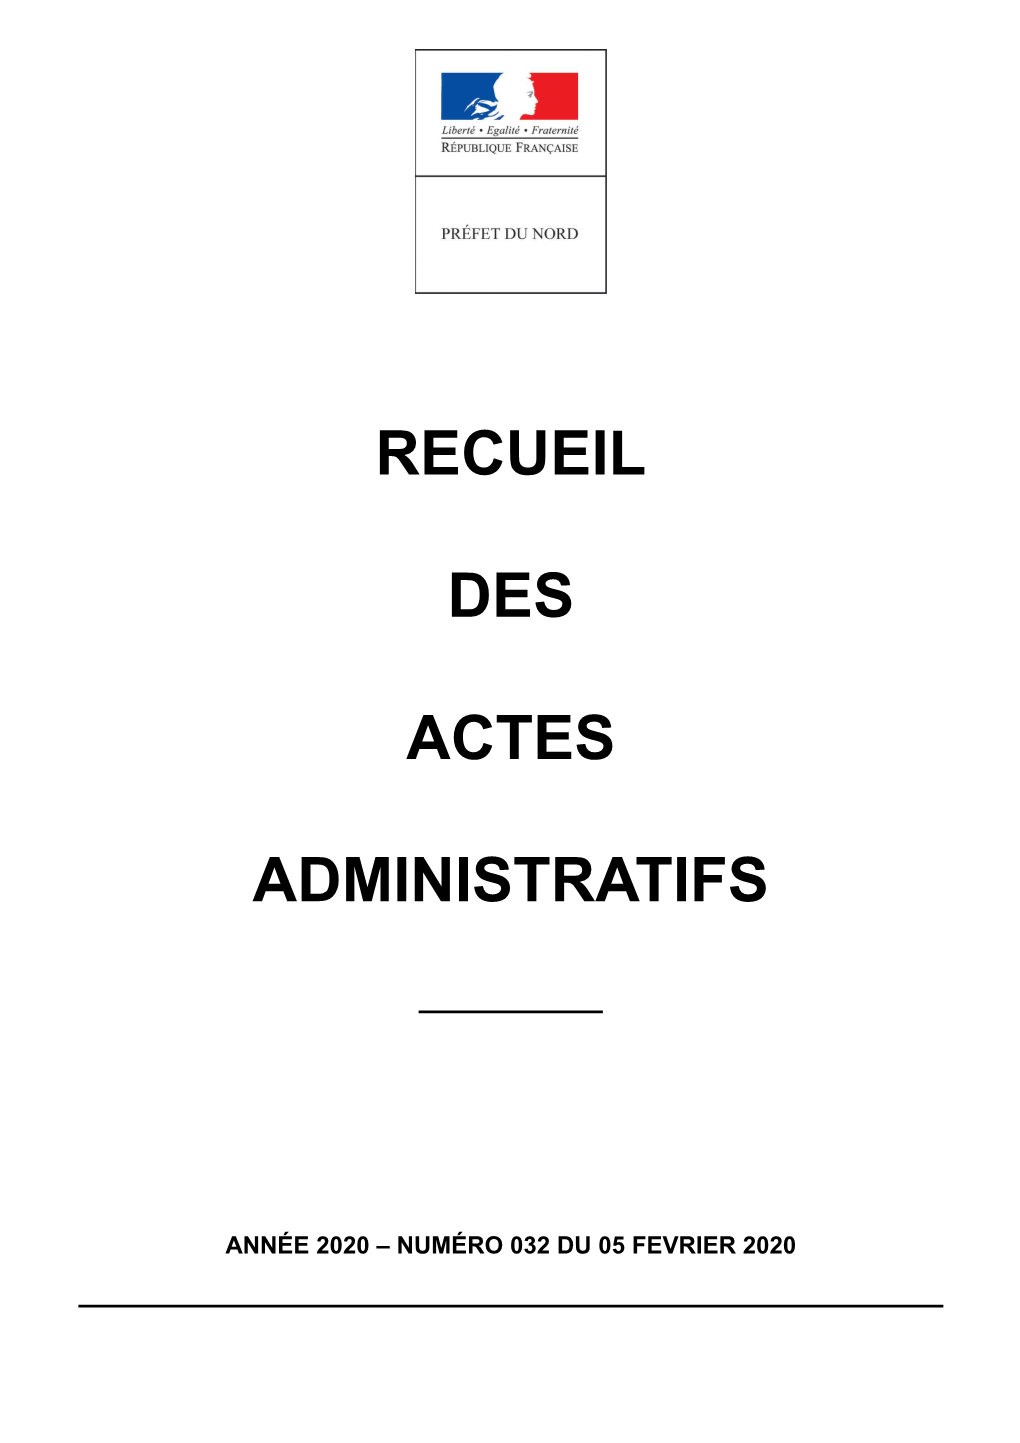 Recueil Des Actes Administratifs De La Préfecture Du Nord Année 2020 – N°032 Du 05 Fevrier 2020